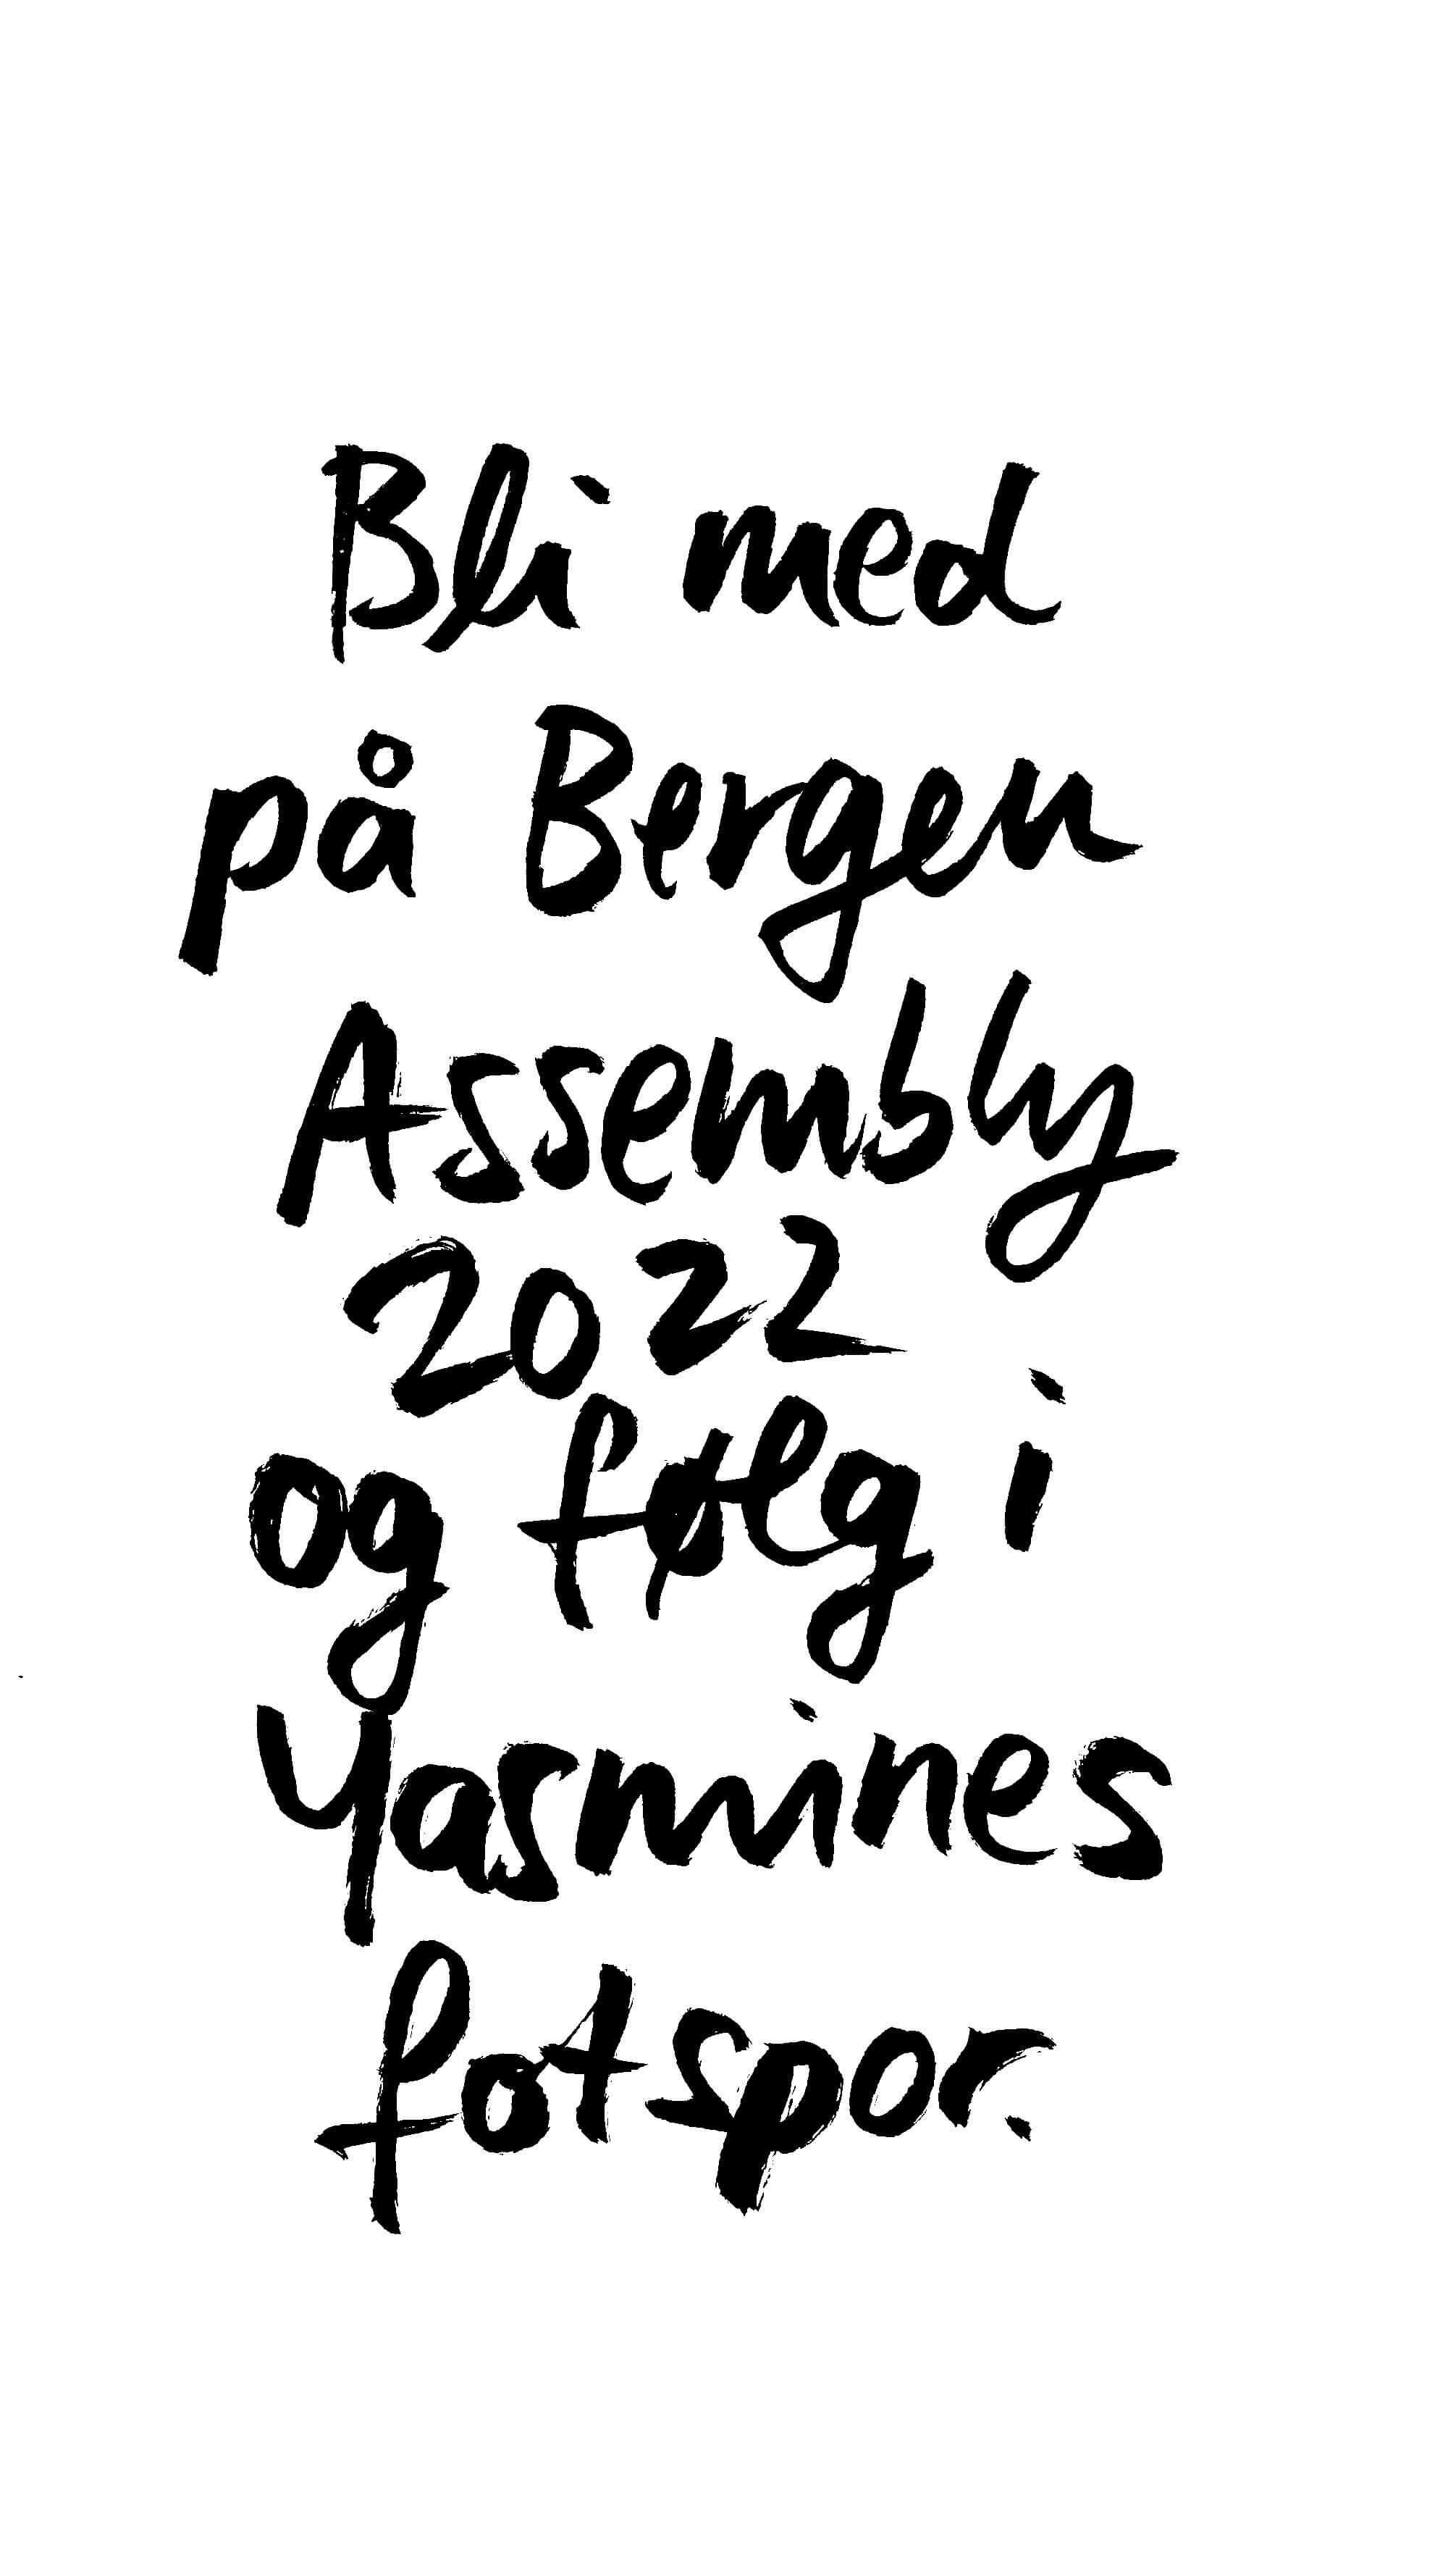 Handwritten text slide: Join Bergen Assembly 2022